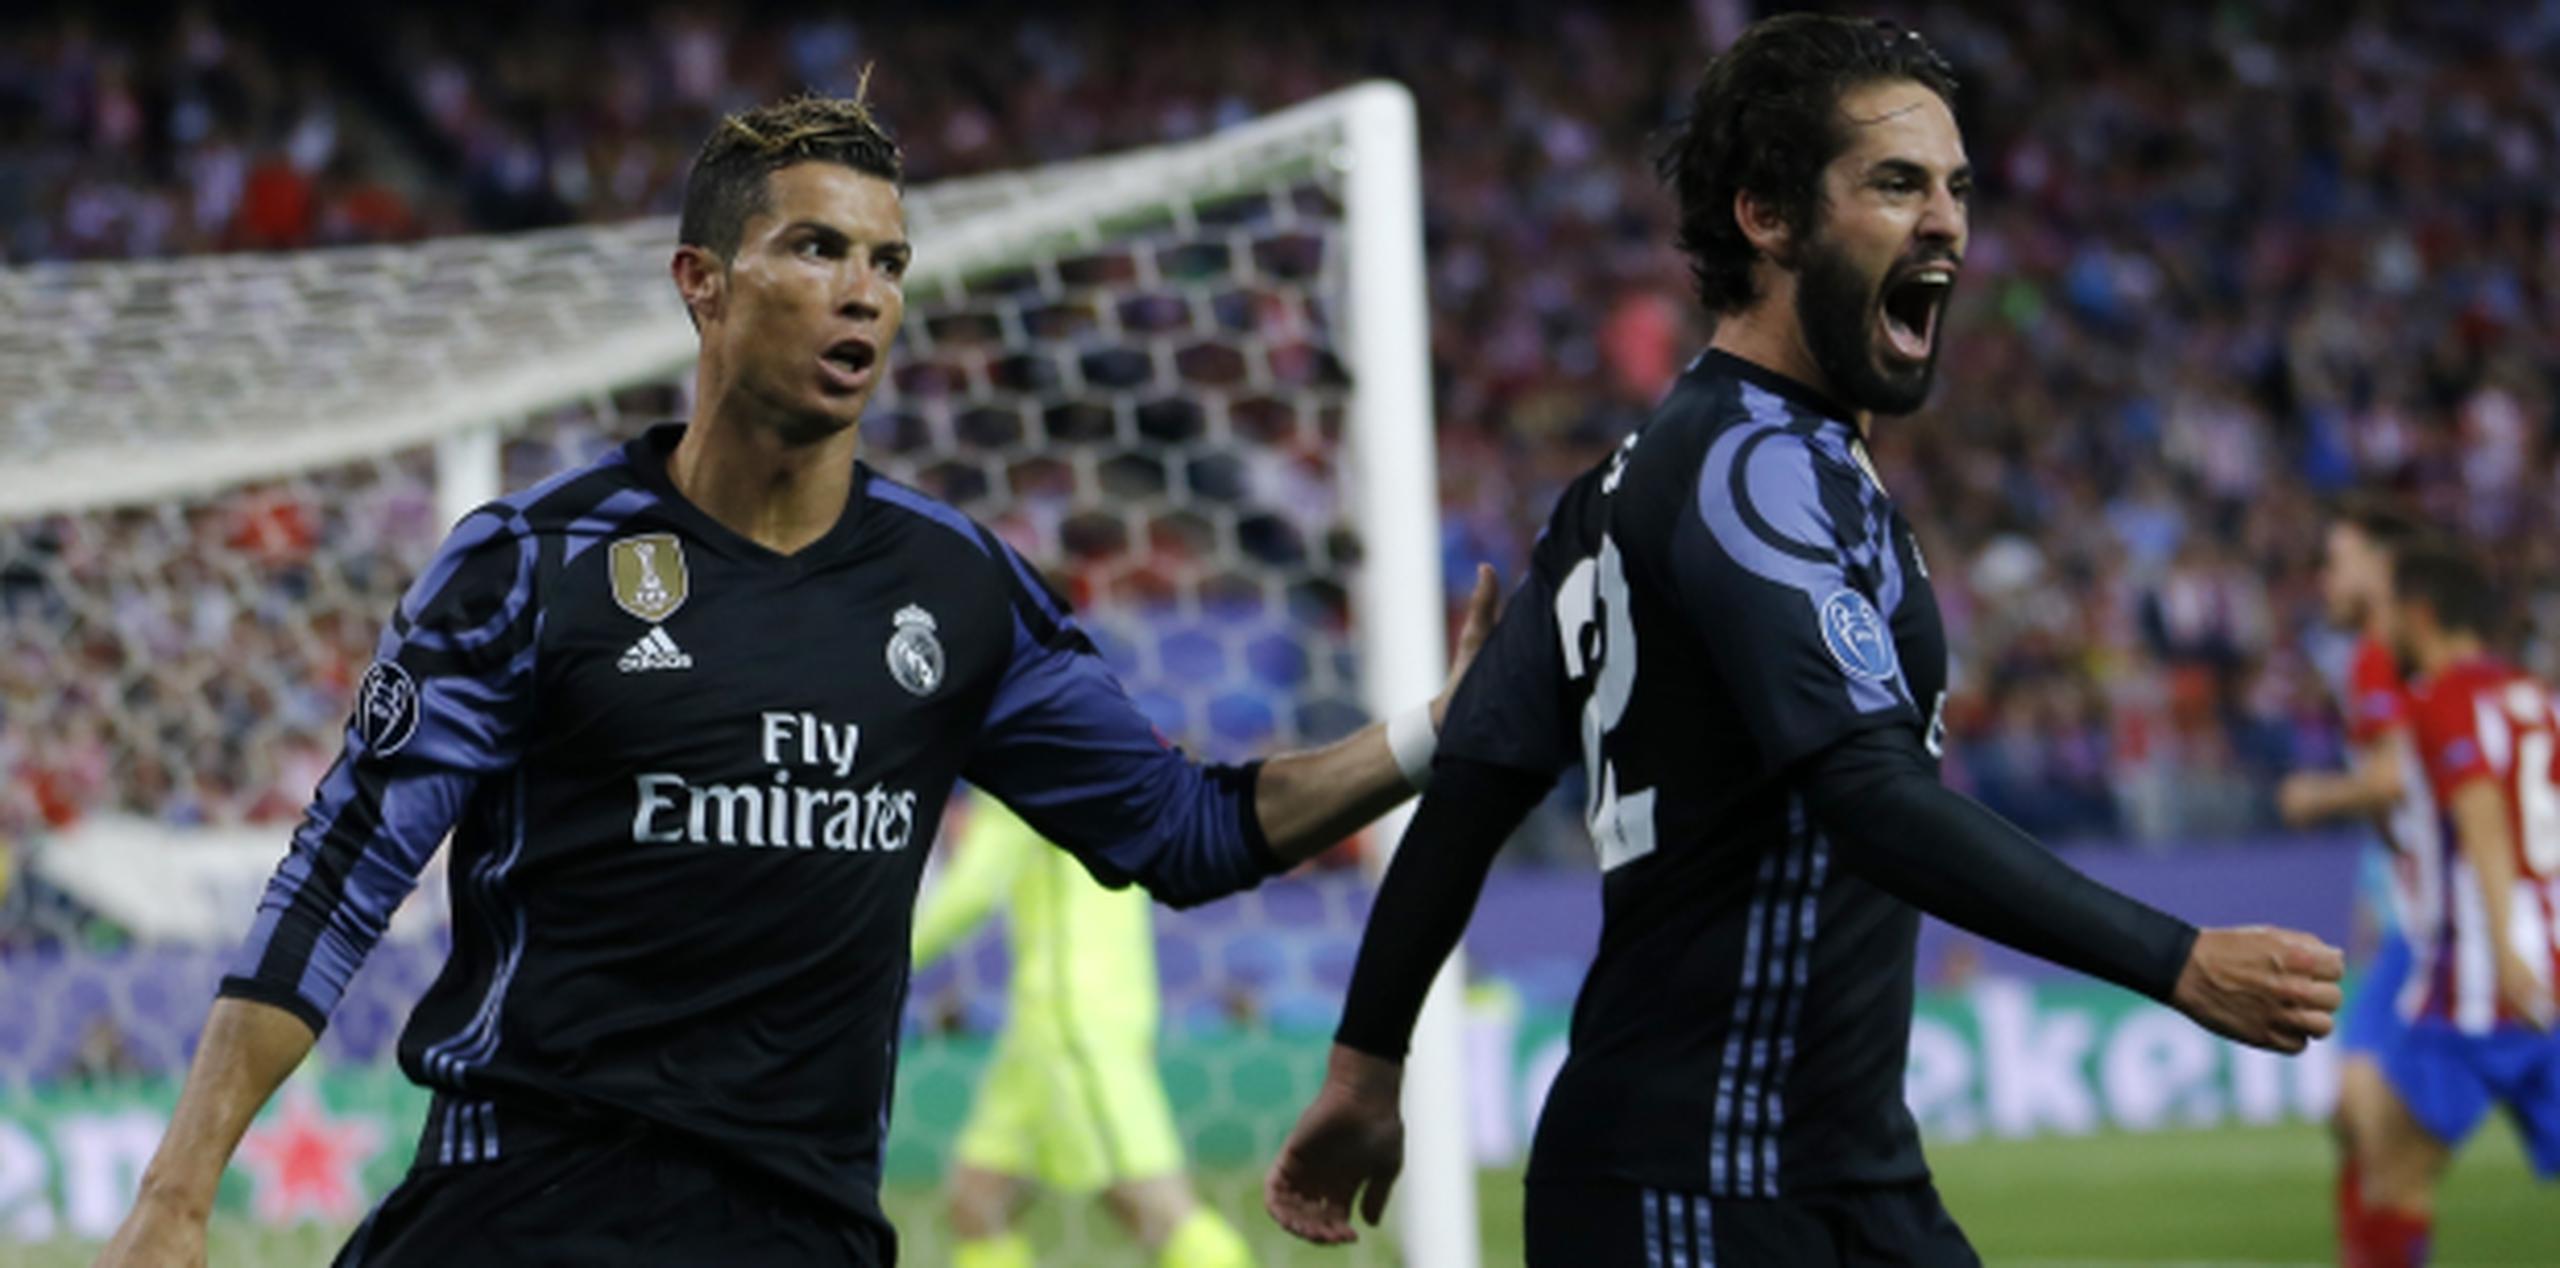 El Madrid buscará revalidar la corona que conquistó el año pasado. (AP/Francisco Seco)